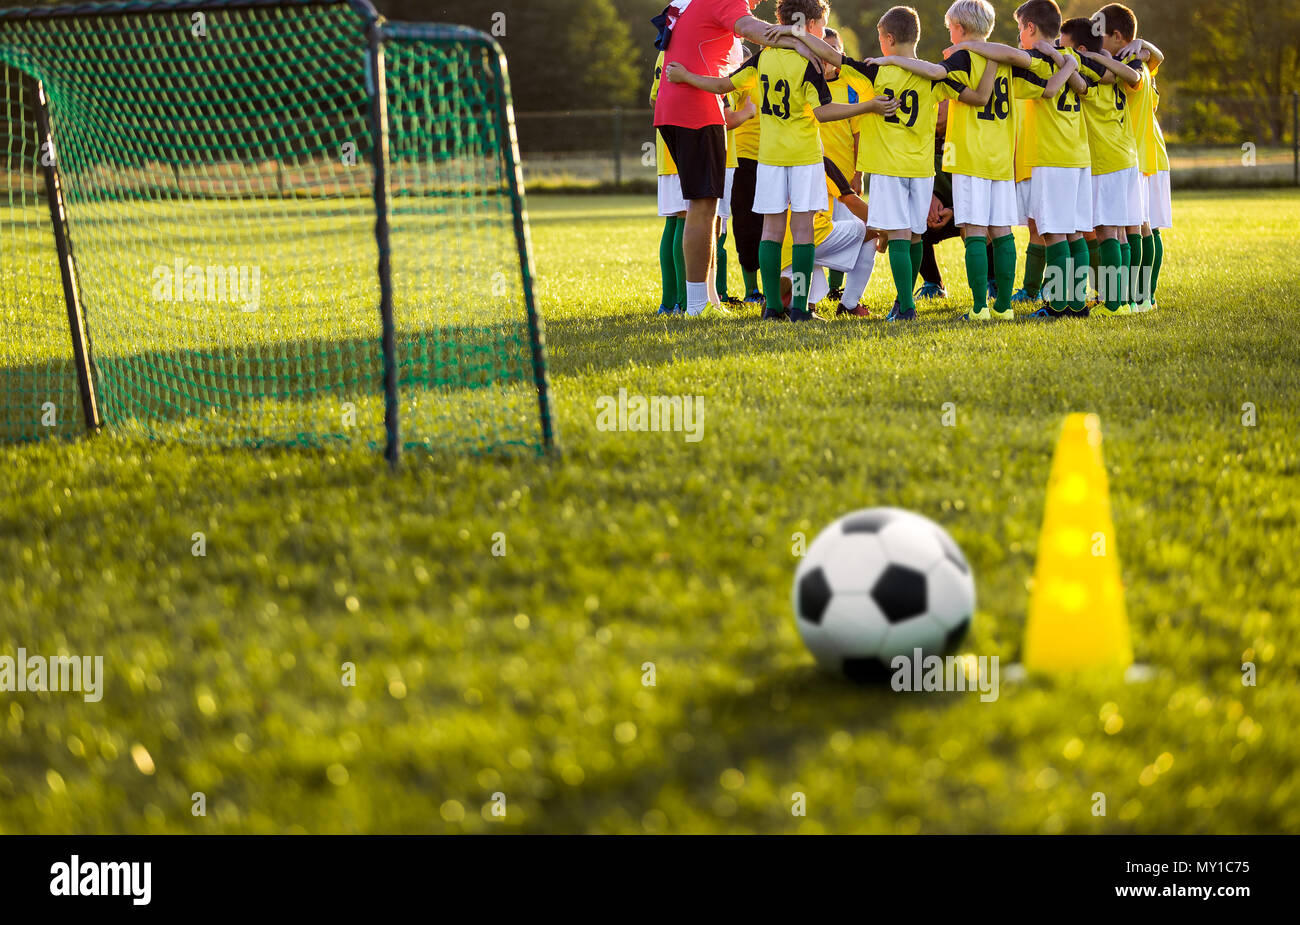 L'entraînement de football soccer pour les jeunes garçons. Session de formation sur le terrain de soccer de l'herbe. Ballon de soccer et pylône cone et buts de soccer à l'avant-plan. Vous Banque D'Images